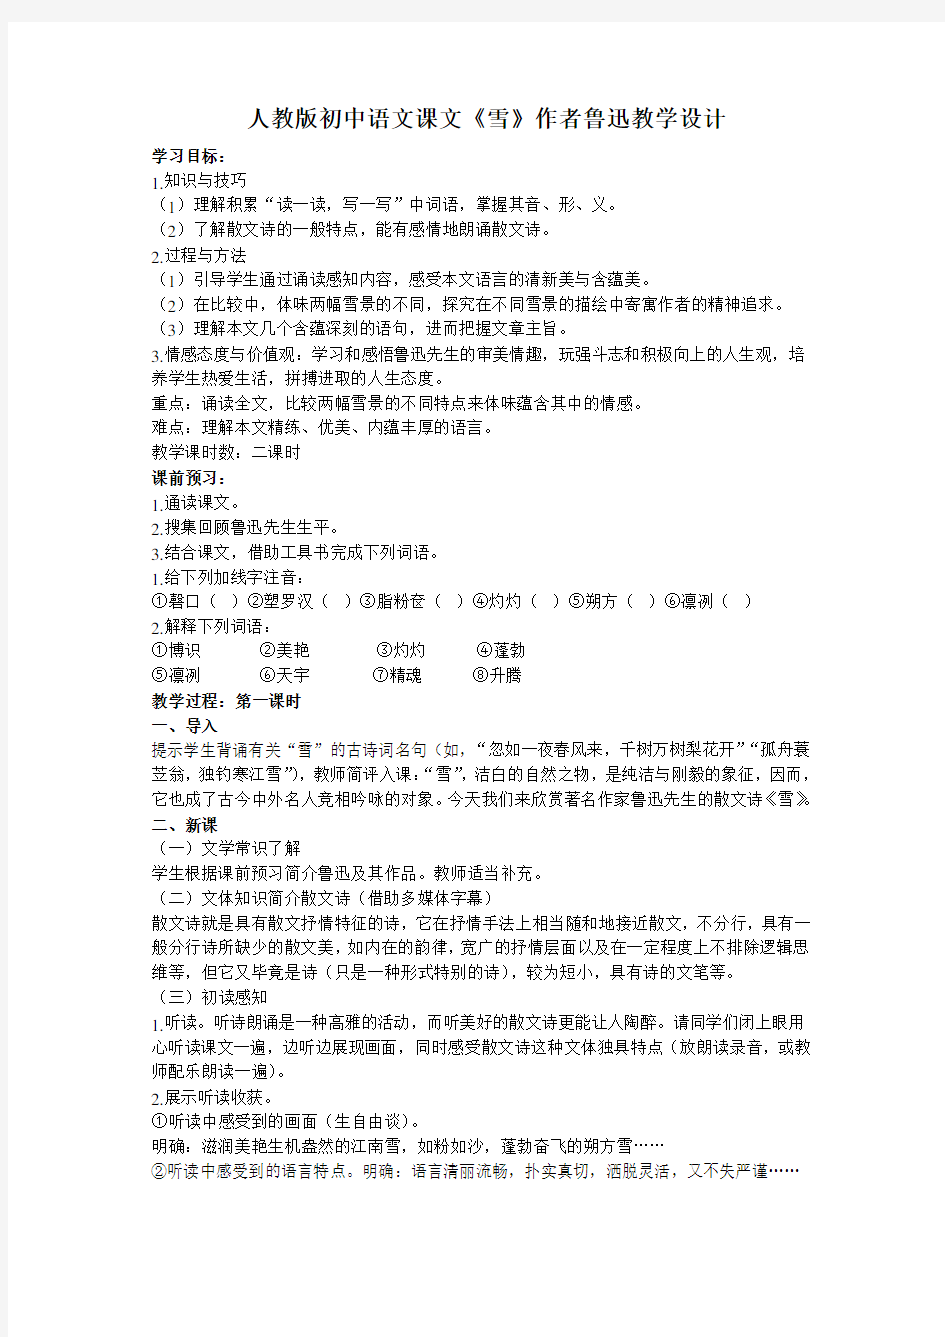 人教版初中语文课文《雪》作者鲁迅教学设计